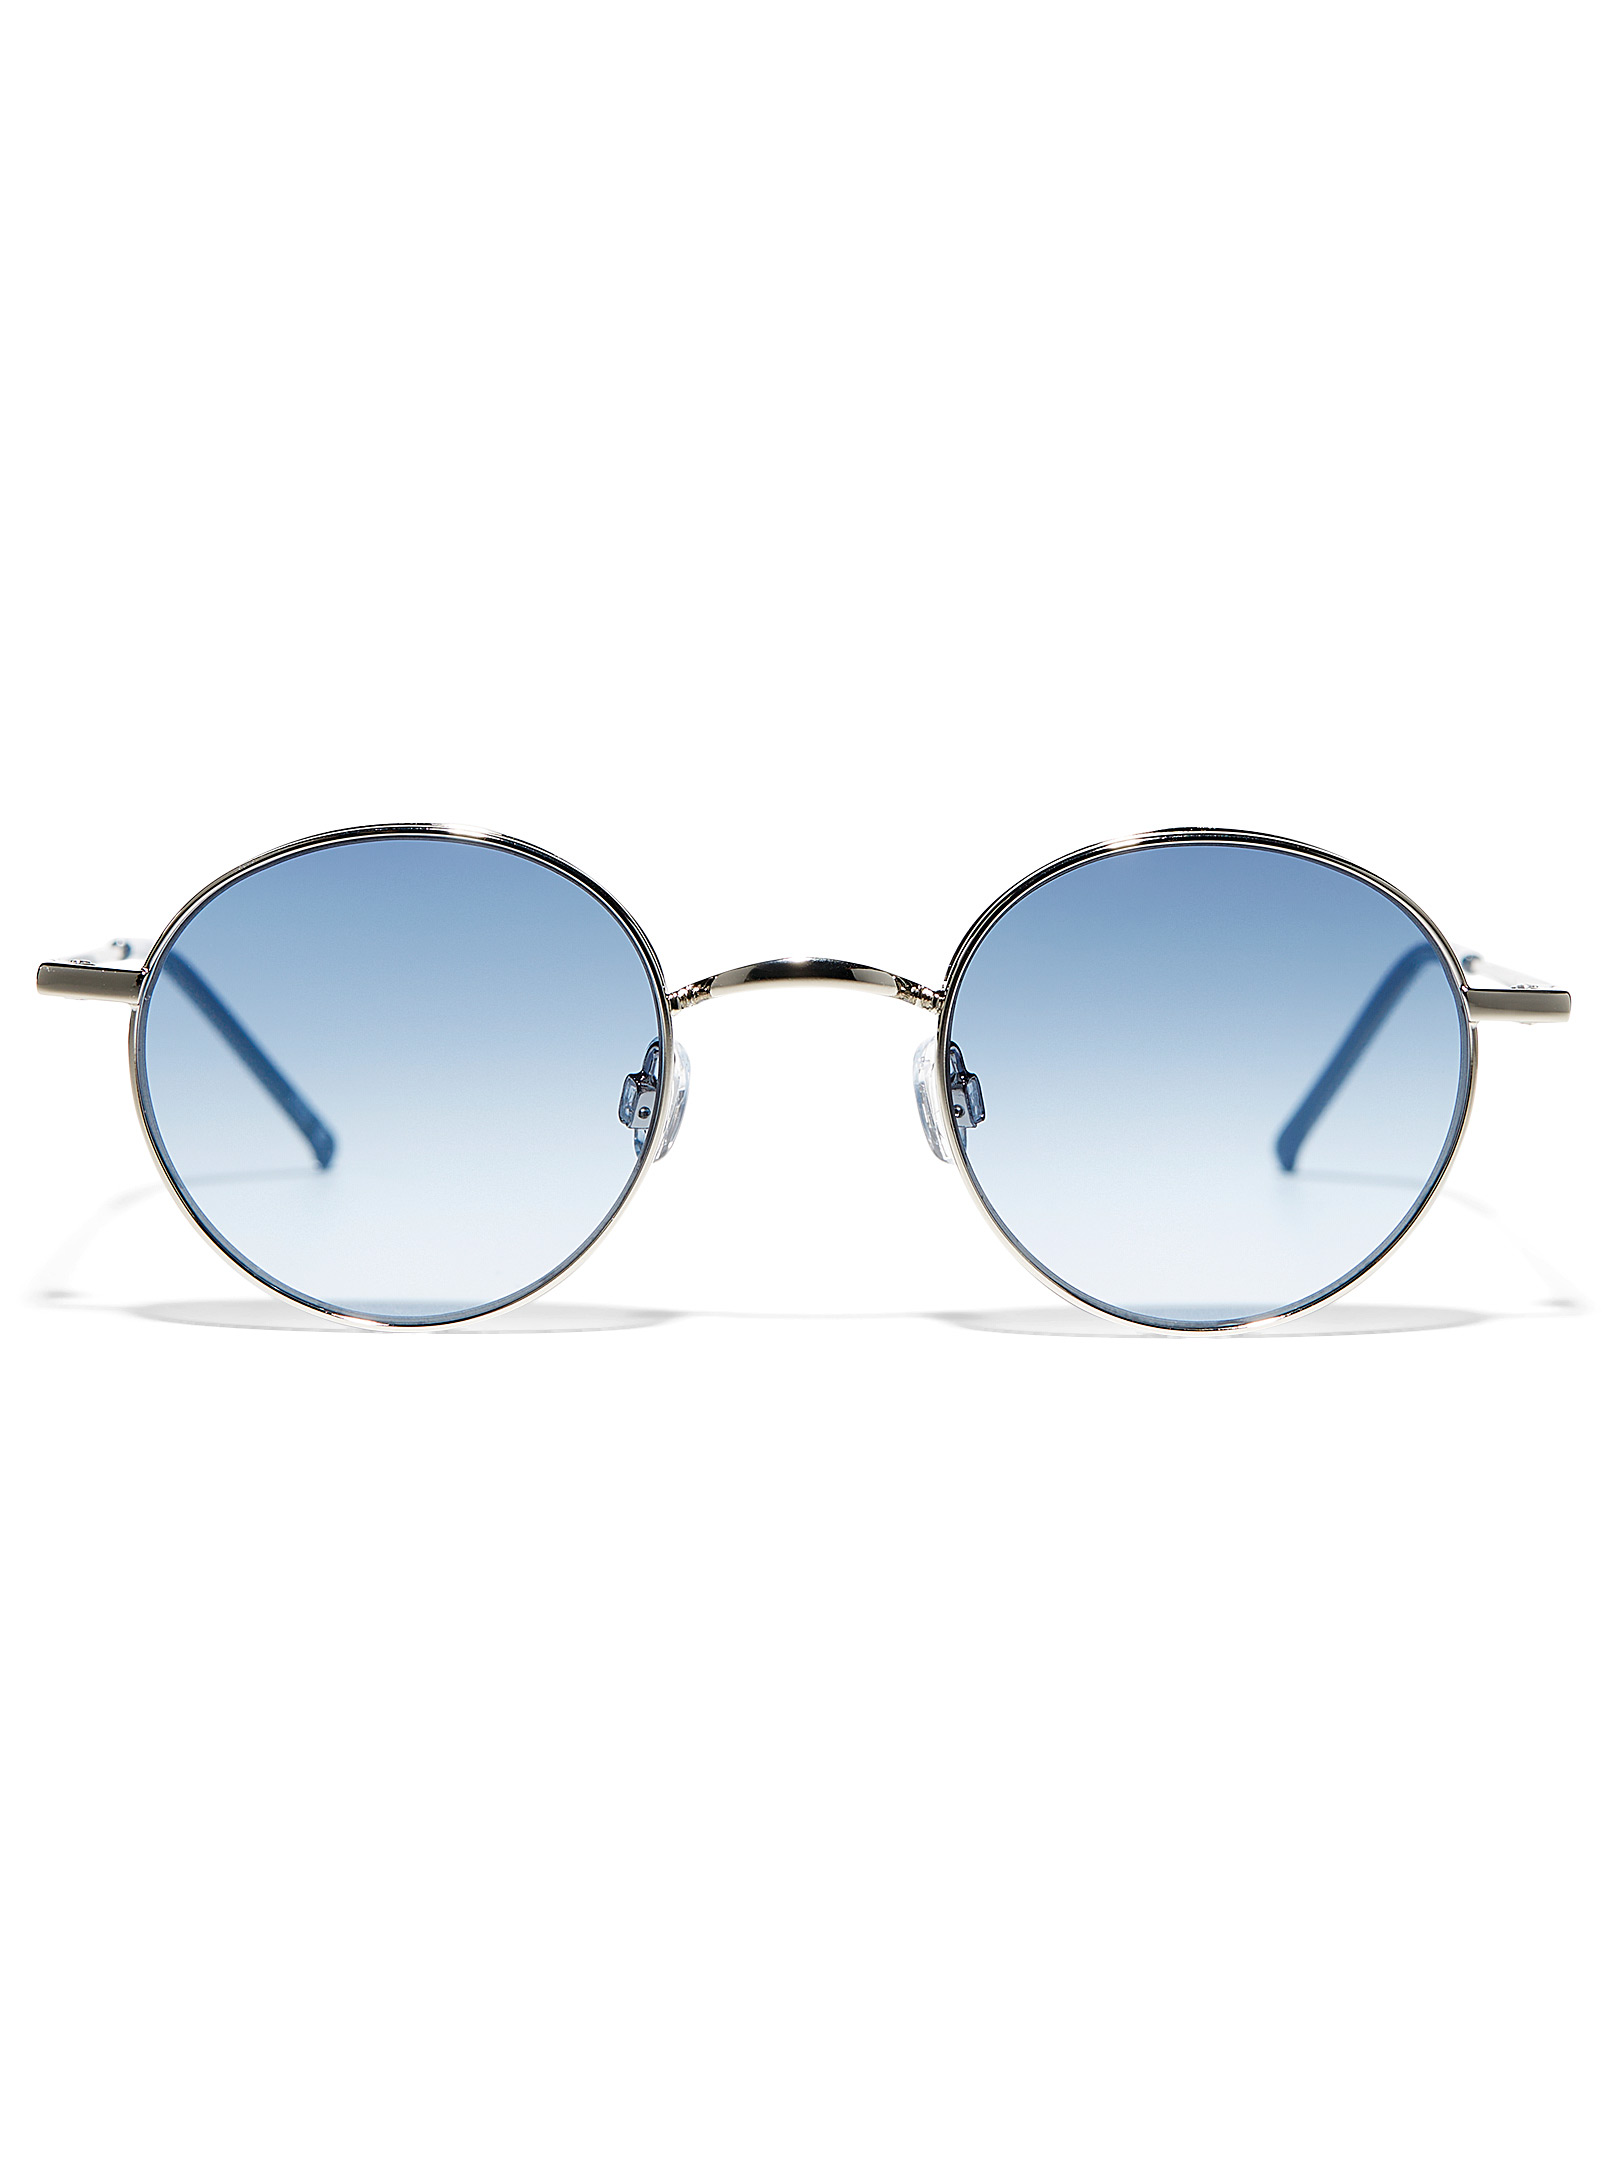 Le 31 Doc Round Sunglasses In Blue